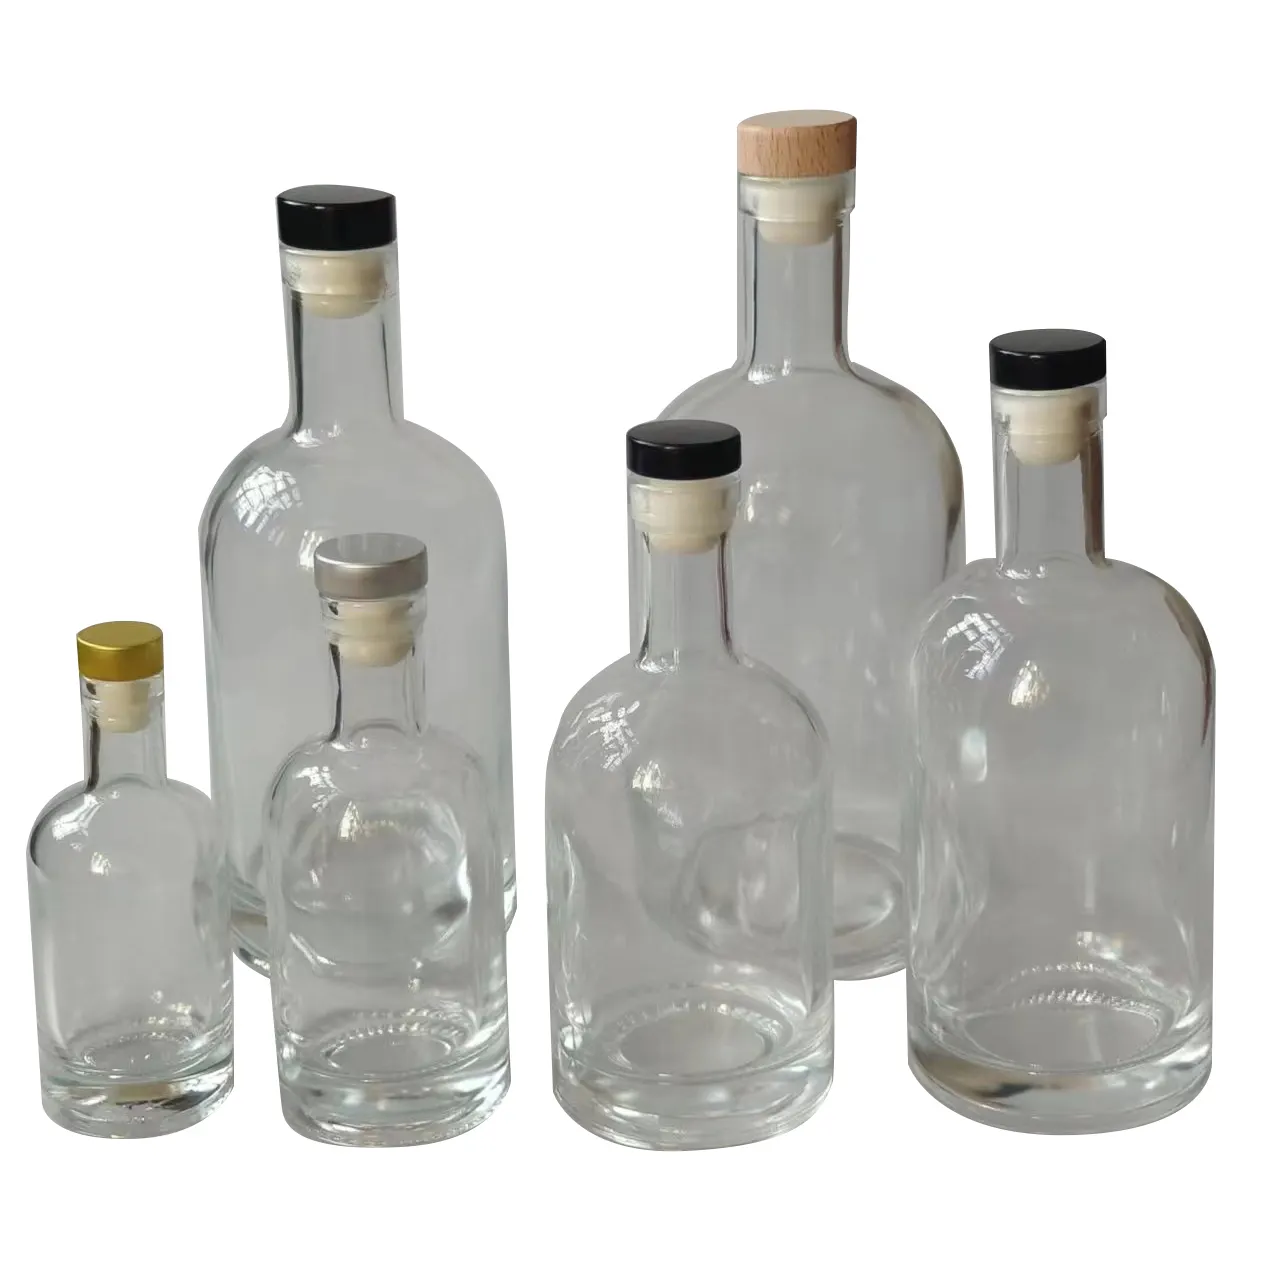 Ns23001 Groothandel Lege Wodka/Liquor Wijnglazen Fles Met Stopper